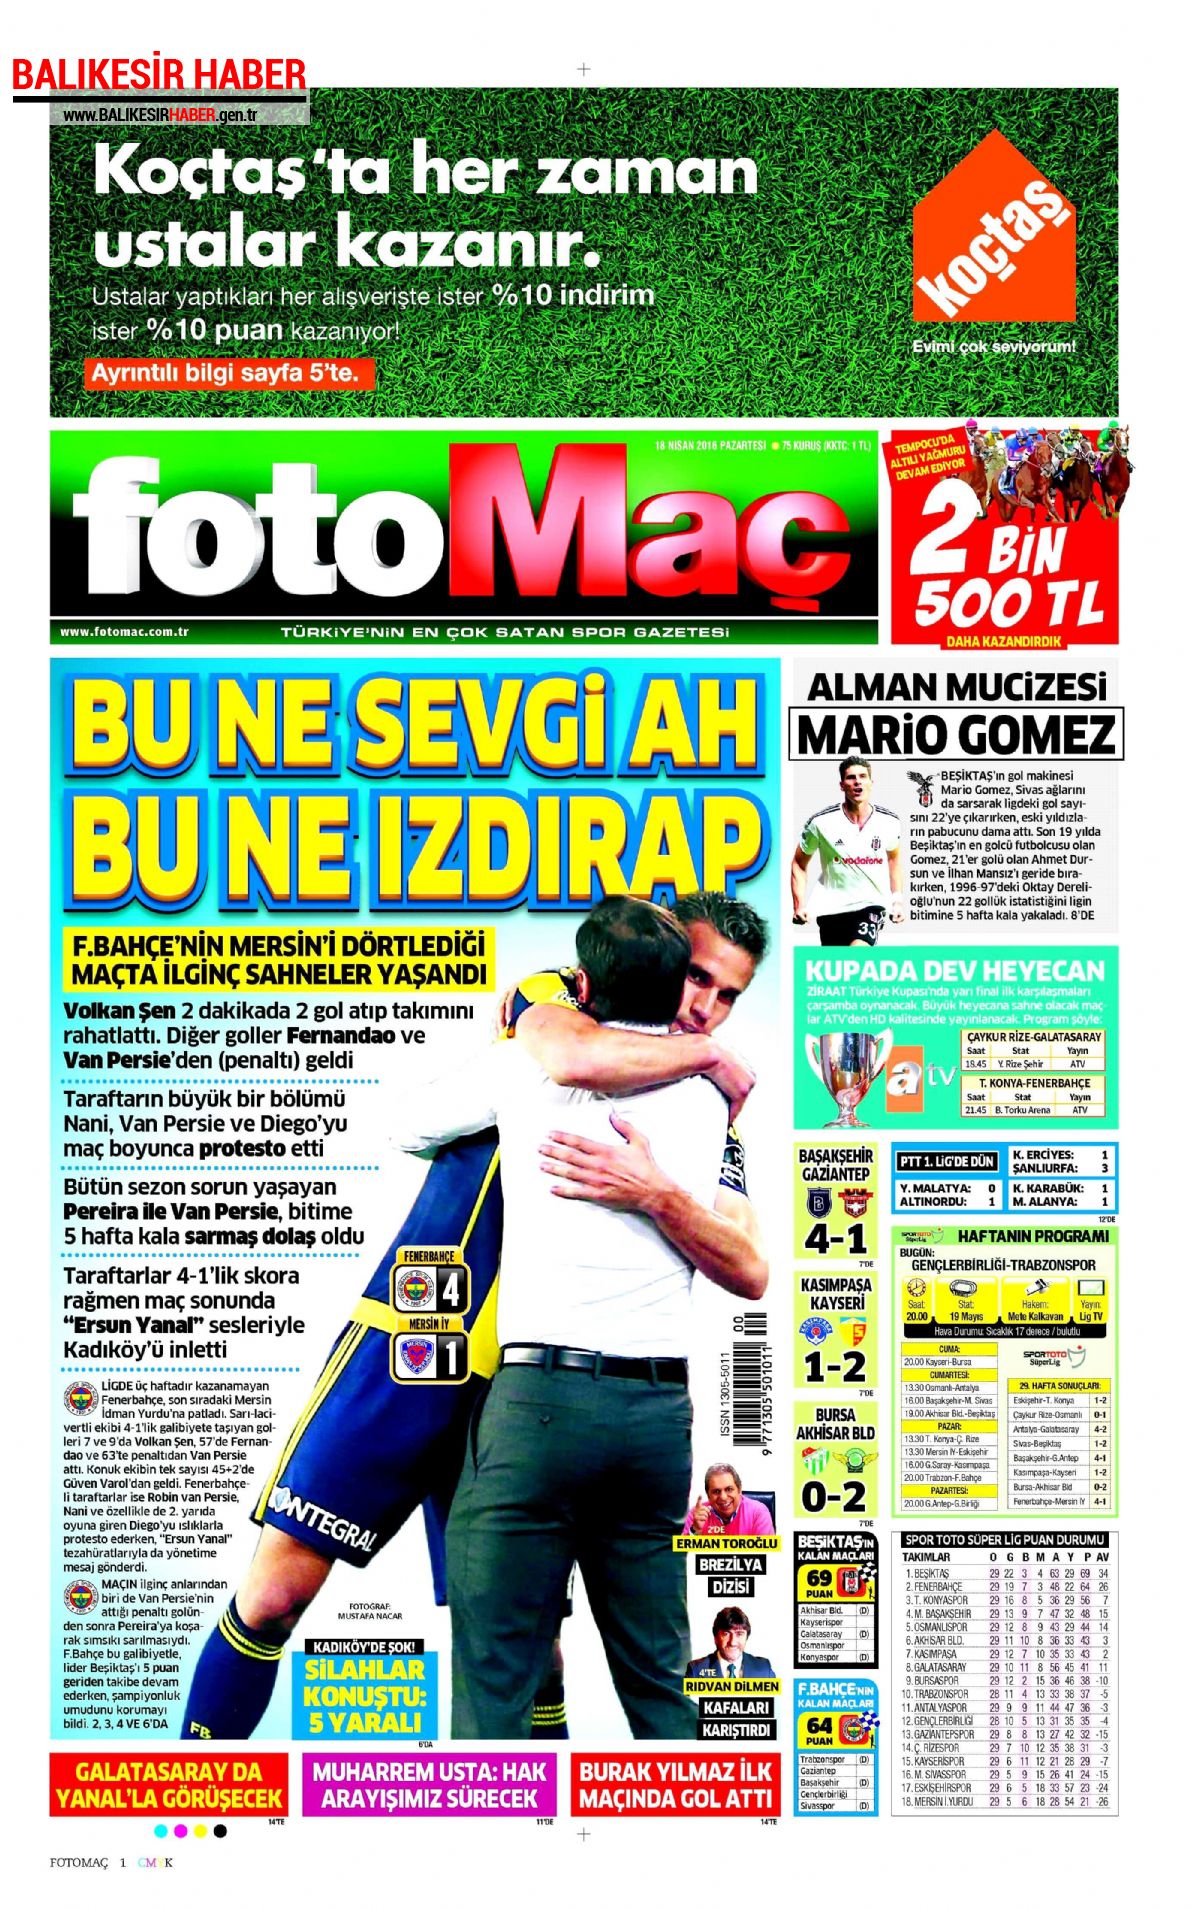 Fotomaç Gazetesi 18 Nisan 2016 Gazete Manşetleri